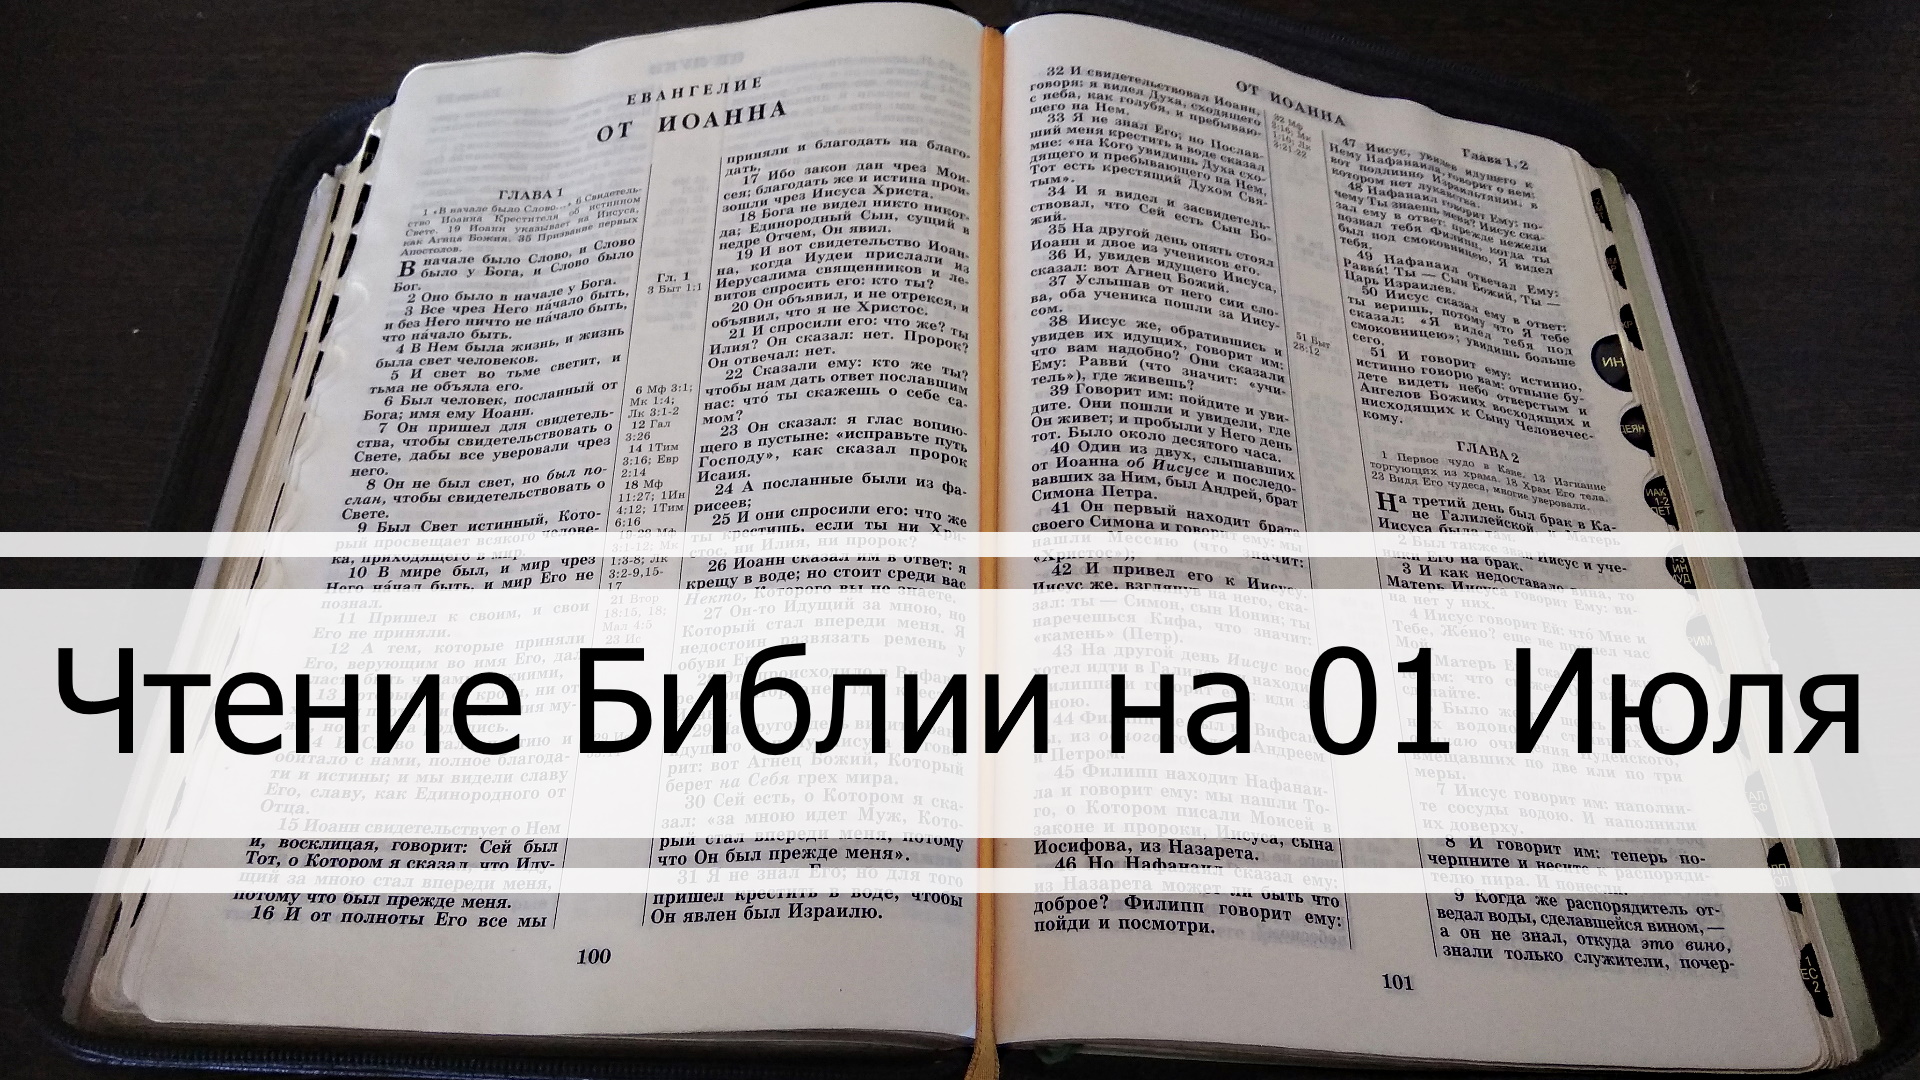 Чтение Библии на 01 Июля: Притчи Соломона 31, Послание Колоссяням 4, 3 Книга Царств 15, 16